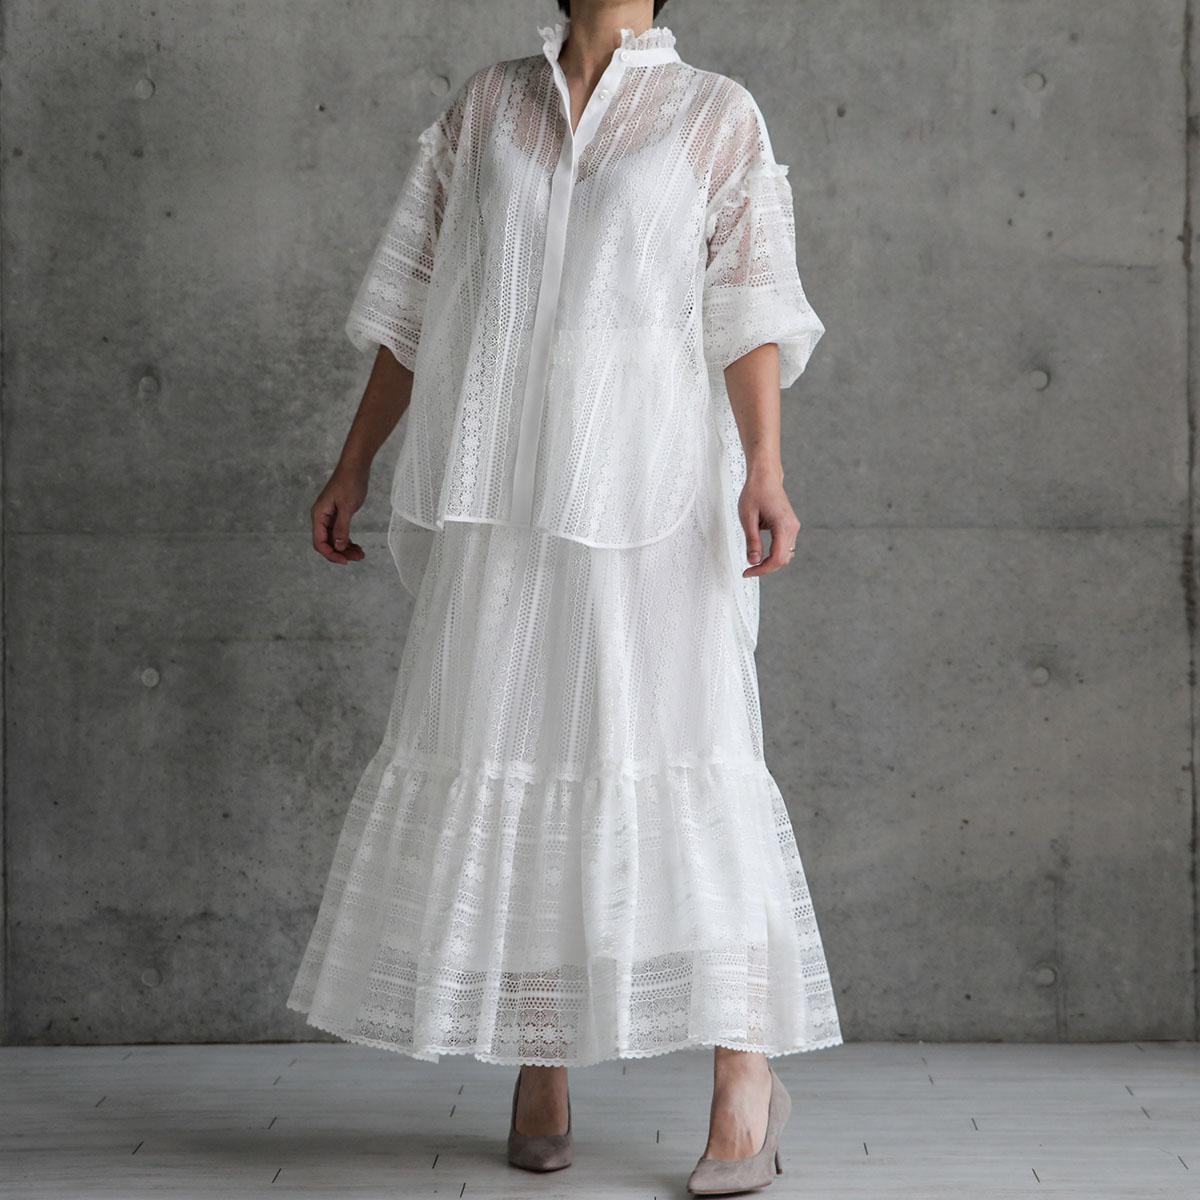 日本品牌 法式蕾絲復古襯衫 兩色 size